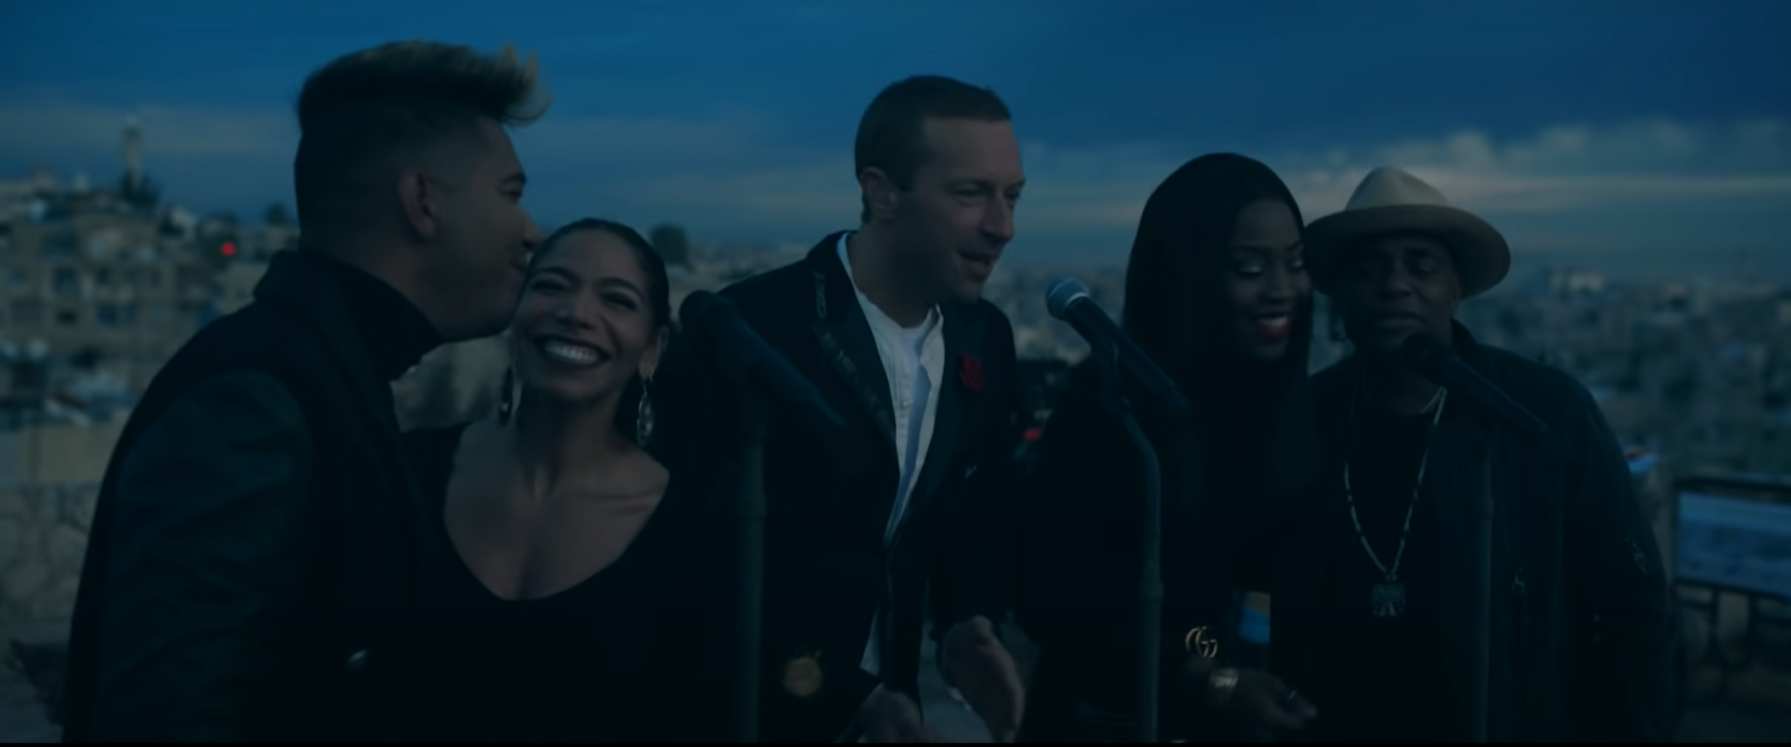 Imagem da apresentação que Coldplay fez ao vivo do disco Everyday Life. Na fotografia, o vocalista Chris Martin está ao centro, na frente de um microfone, cantando. Ao lado esquerdo dele, estão dois cantores, primeiro, à esquerda da imagem, um homem negro de cabelo liso e logo depois uma mulher, também negra, de cabelos presos, batom escuro e sorridente. Eles dividem um microfone, que está logo na frente deles. Então, à direita de Chris Martin, estão mais outros dois cantores. Primeiro, uma mulher negra, de cabelos lisos soltos, e depois, na extremidade direita da imagem, um homem, que usa um chapéu marrom. Eles também dividem um microfone e sorriem enquanto cantam. Ao fundo da imagem, está a cidade e o céu, ainda meio escuro por conta do amanhecer.